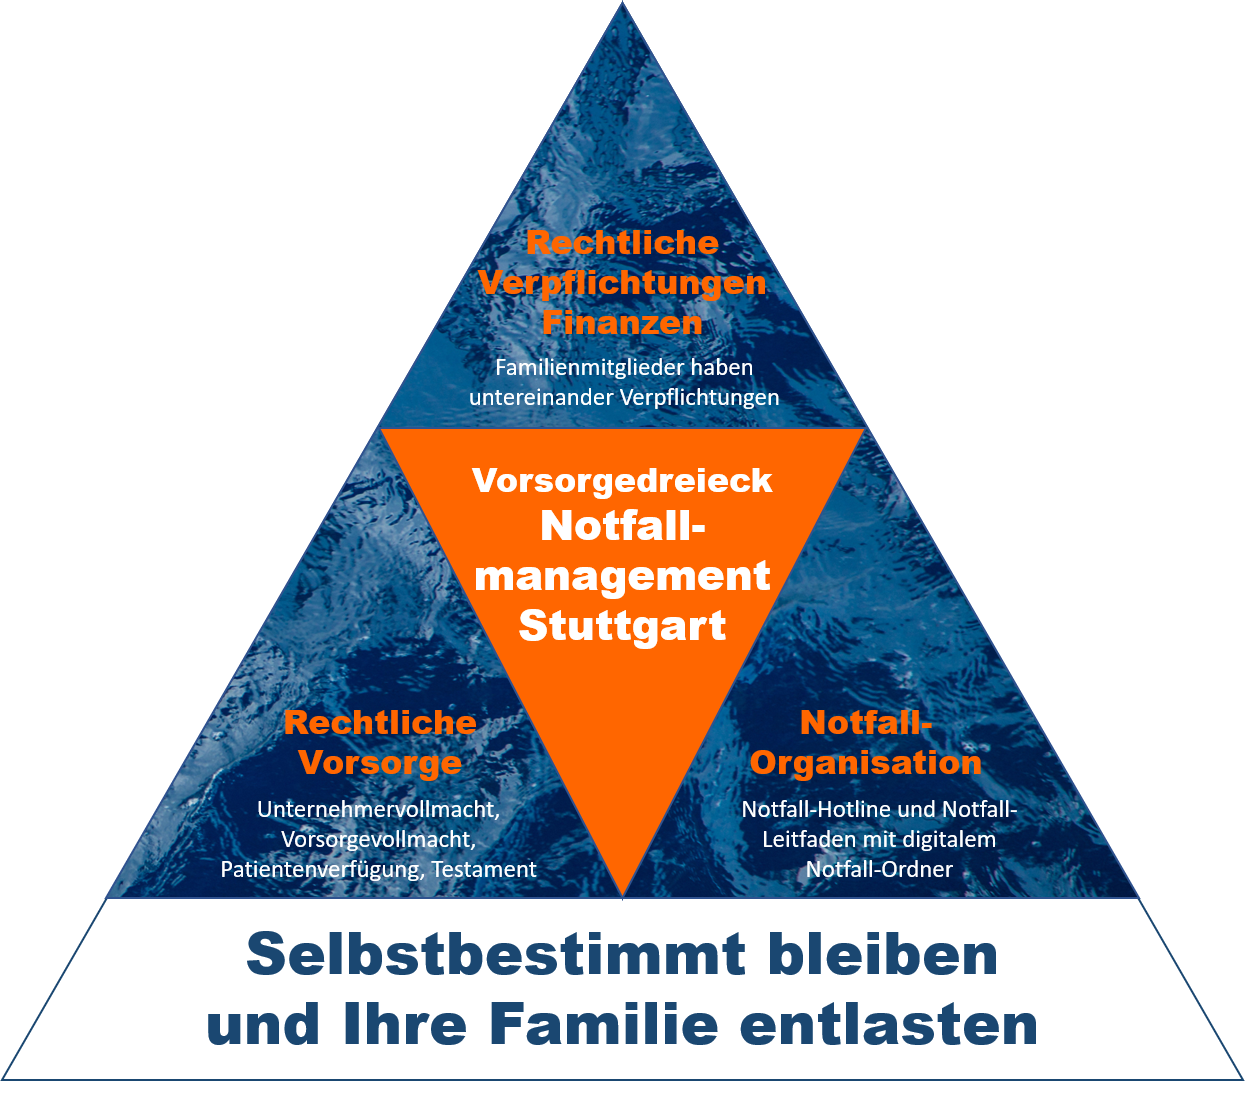 Vorsorgedreieck - Notfallmanagement Stuttgart